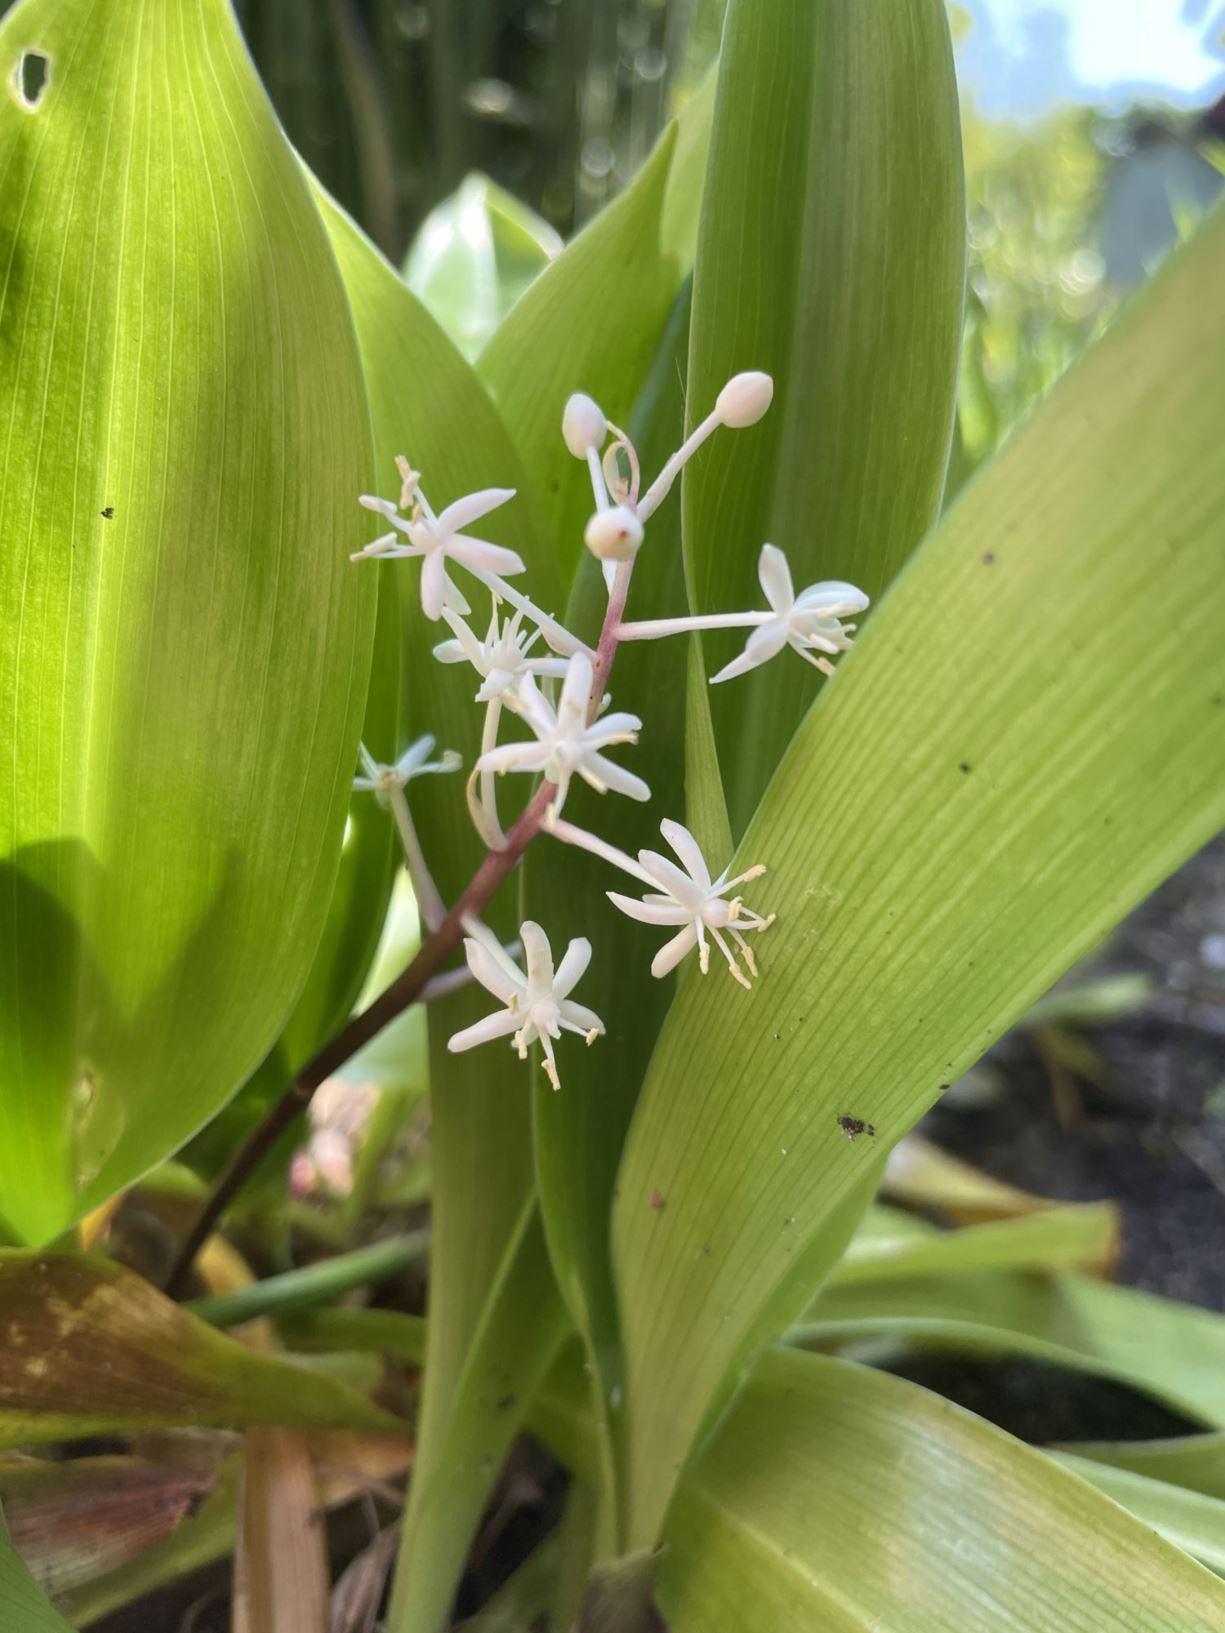 Speirantha gardenii - False lily-of-the-valley, 白穗花 bai sui hua